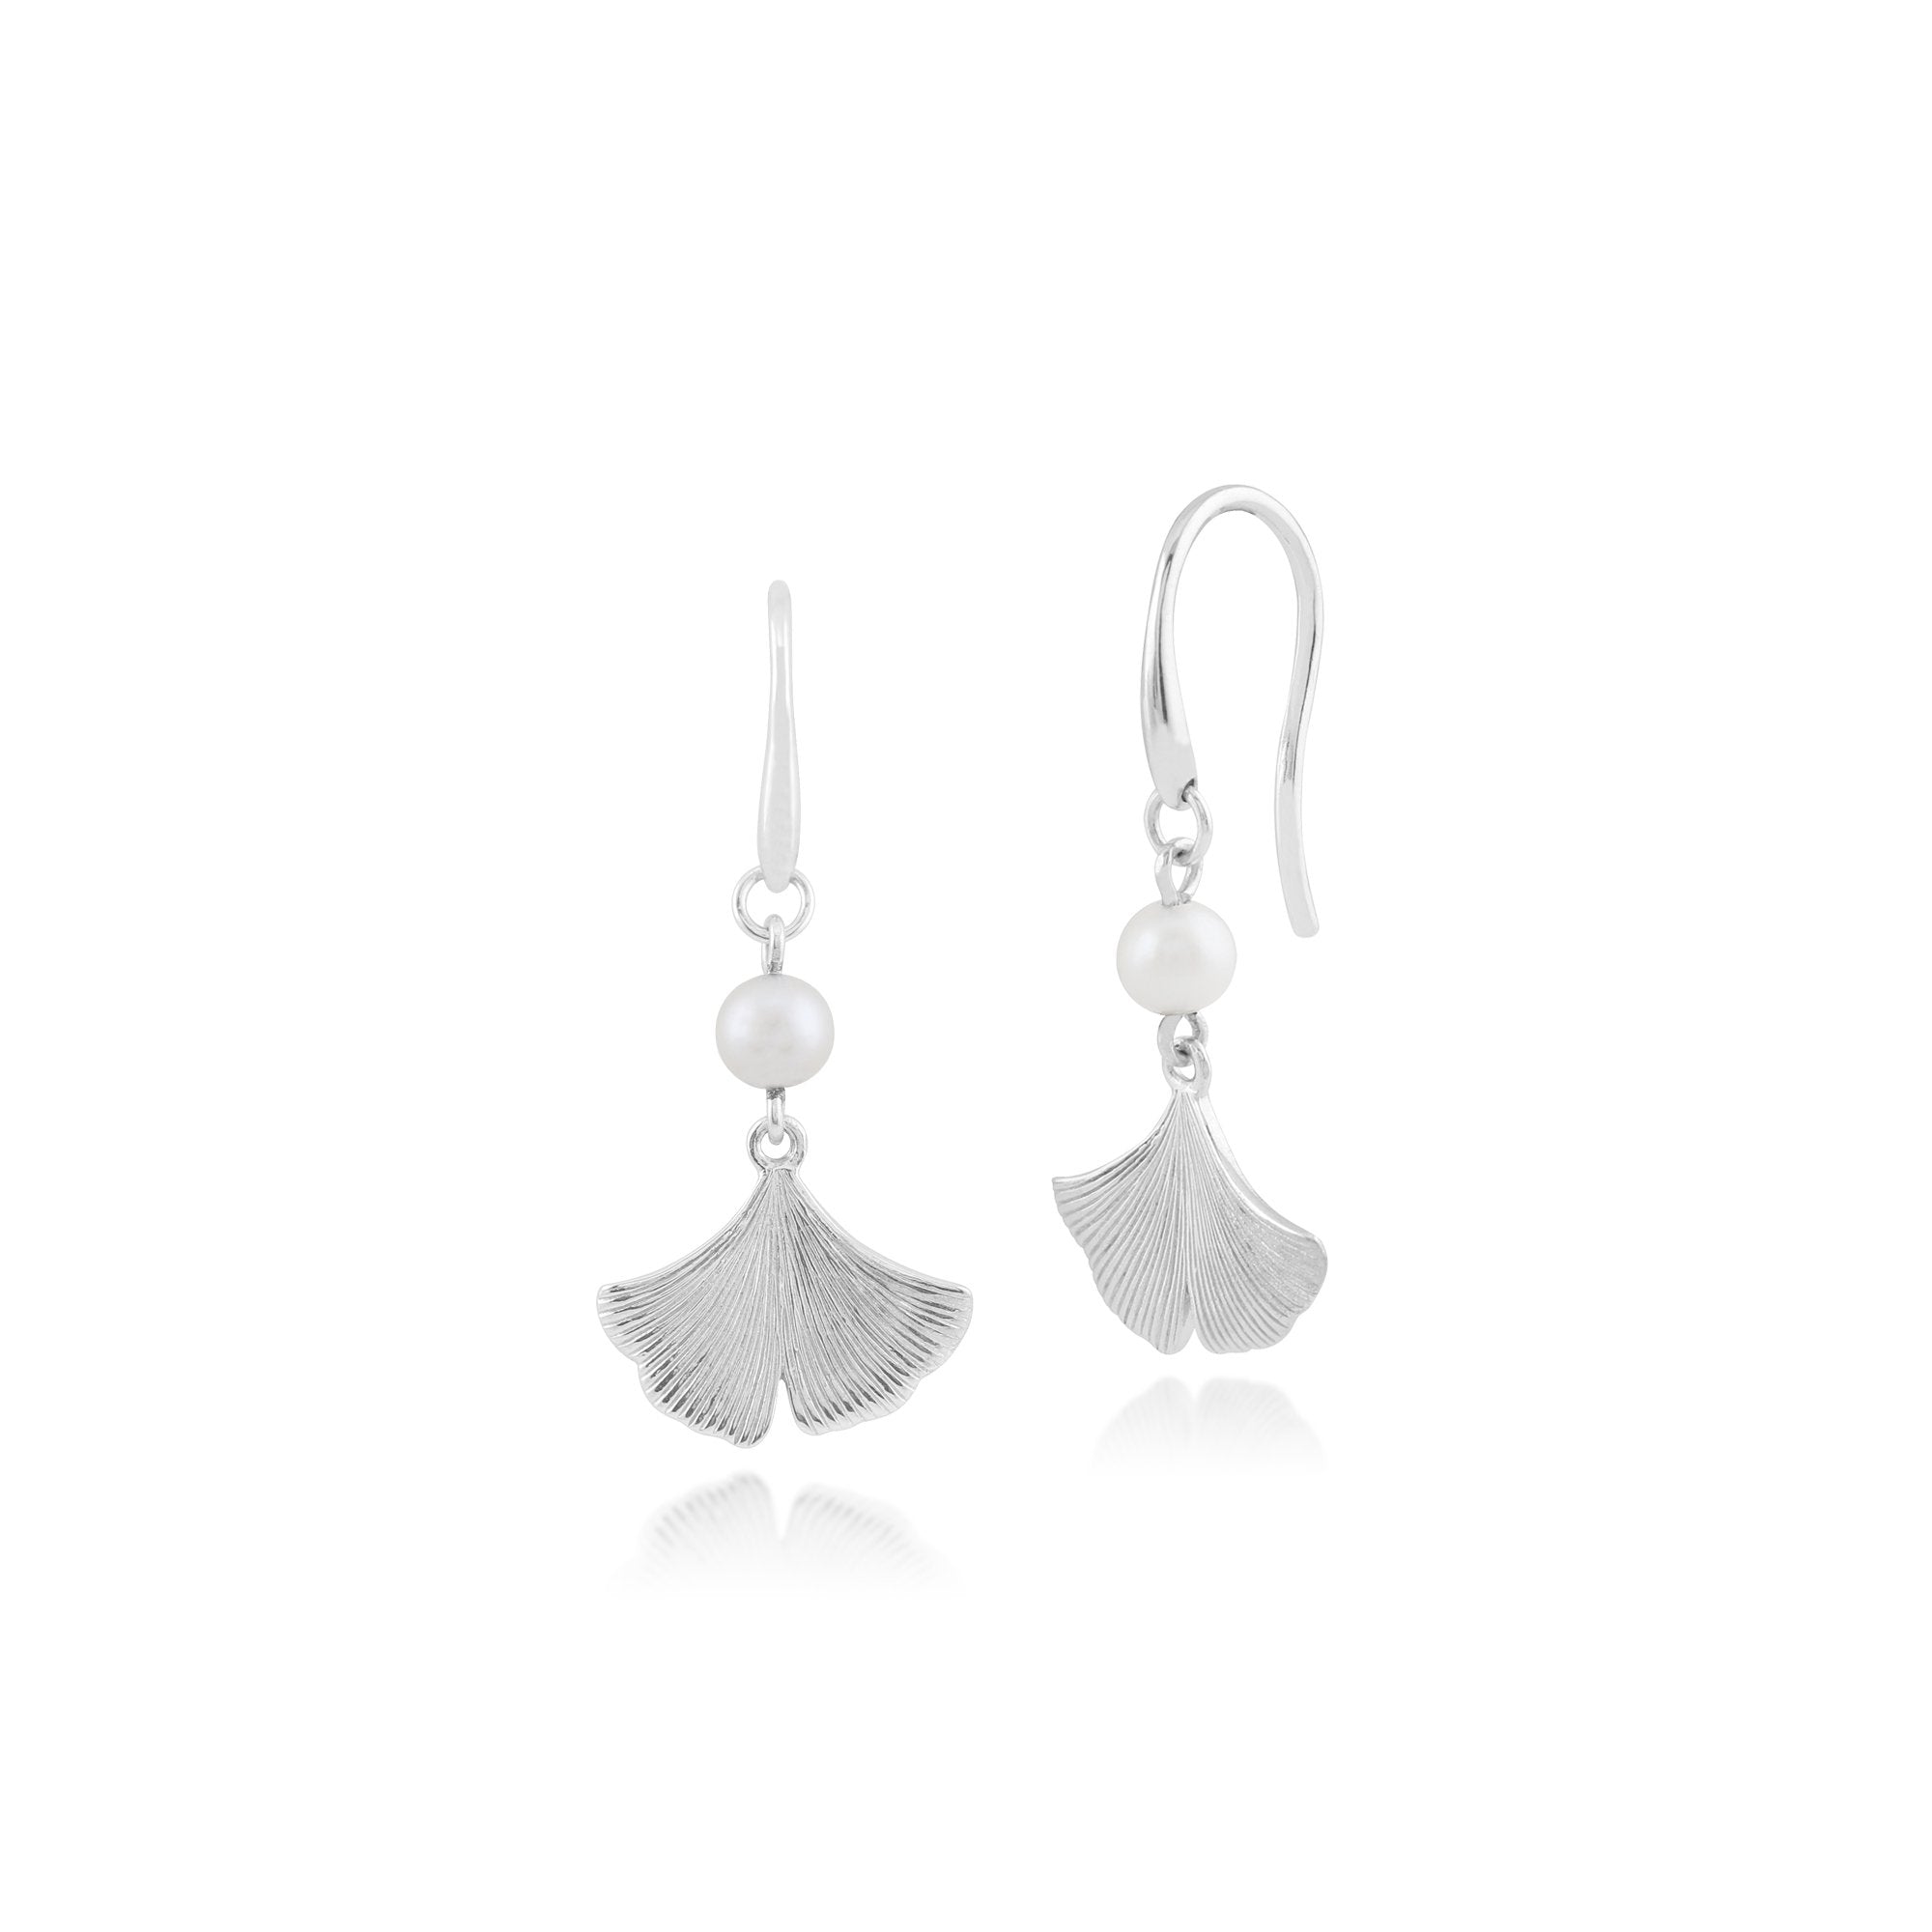 Floral Pearl Gingko Leaf Drop Earrings in 925 Sterling Silver